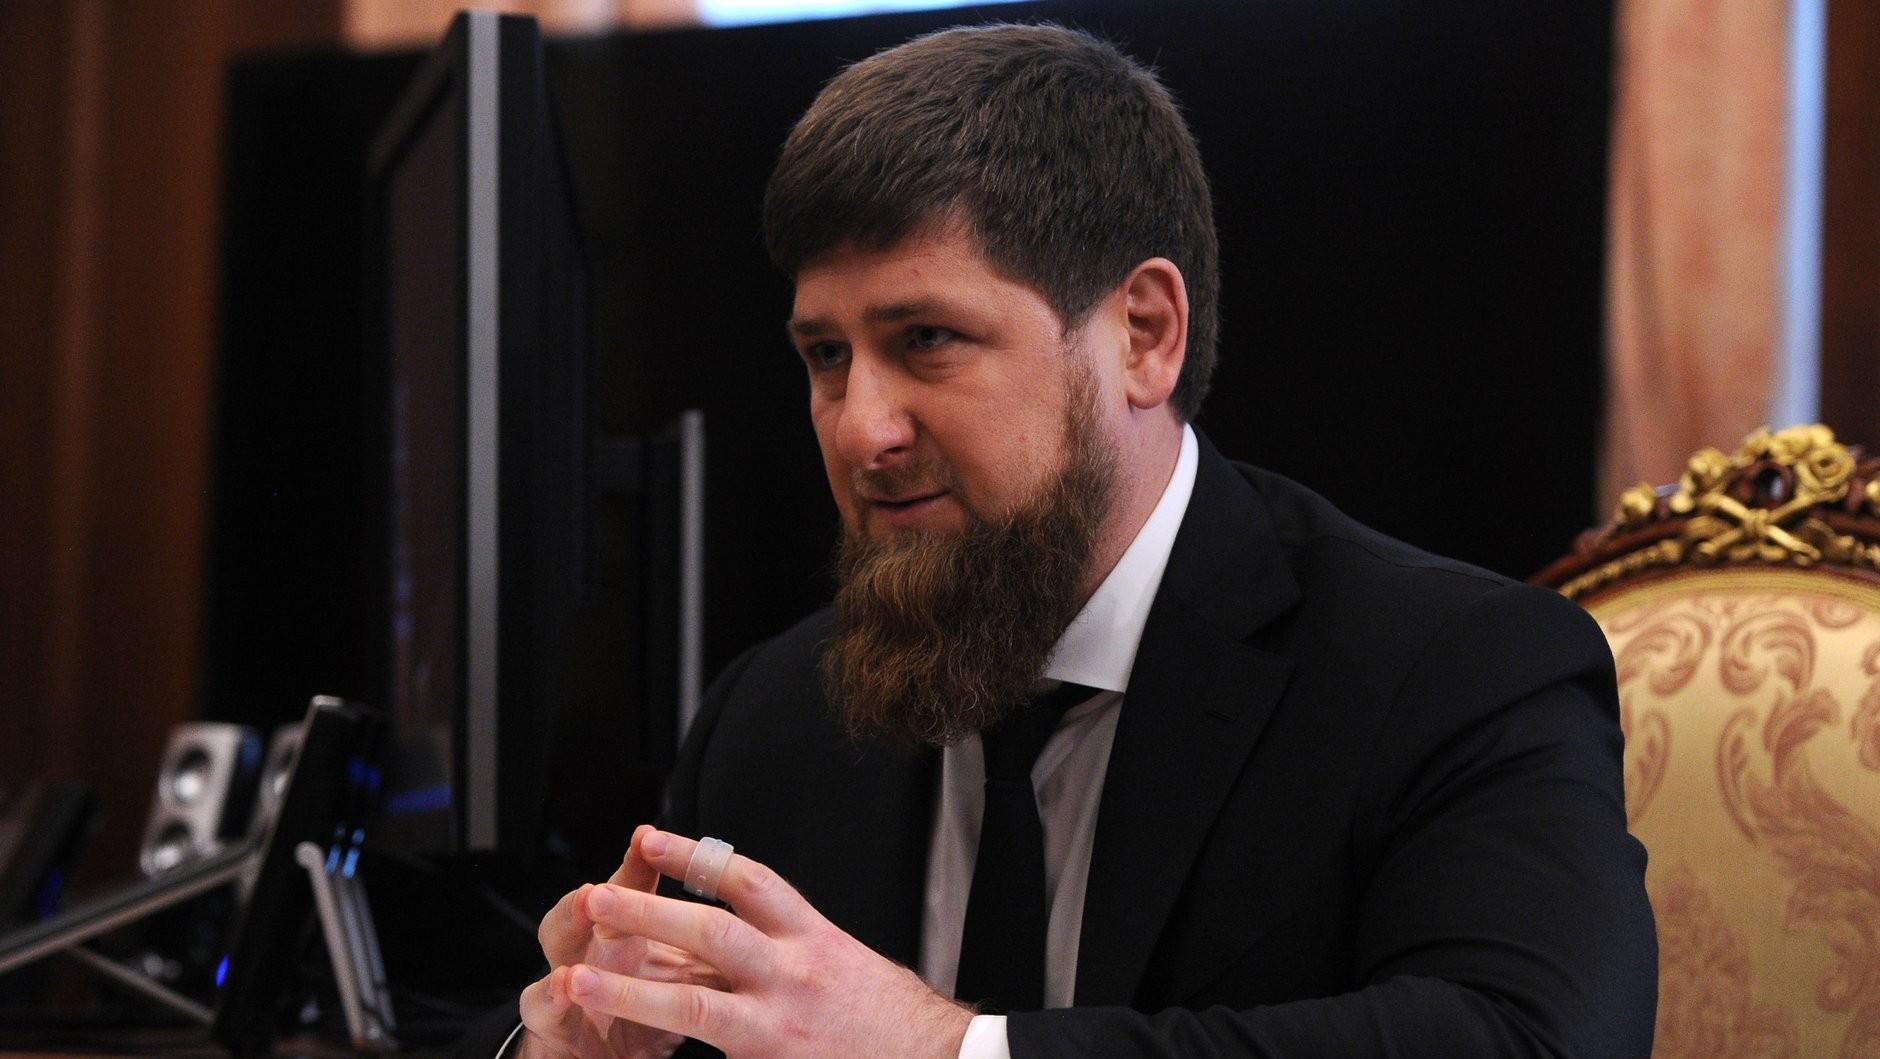 Глава Чеченской Республики Рамзан Кадыров [kremlin.ru]